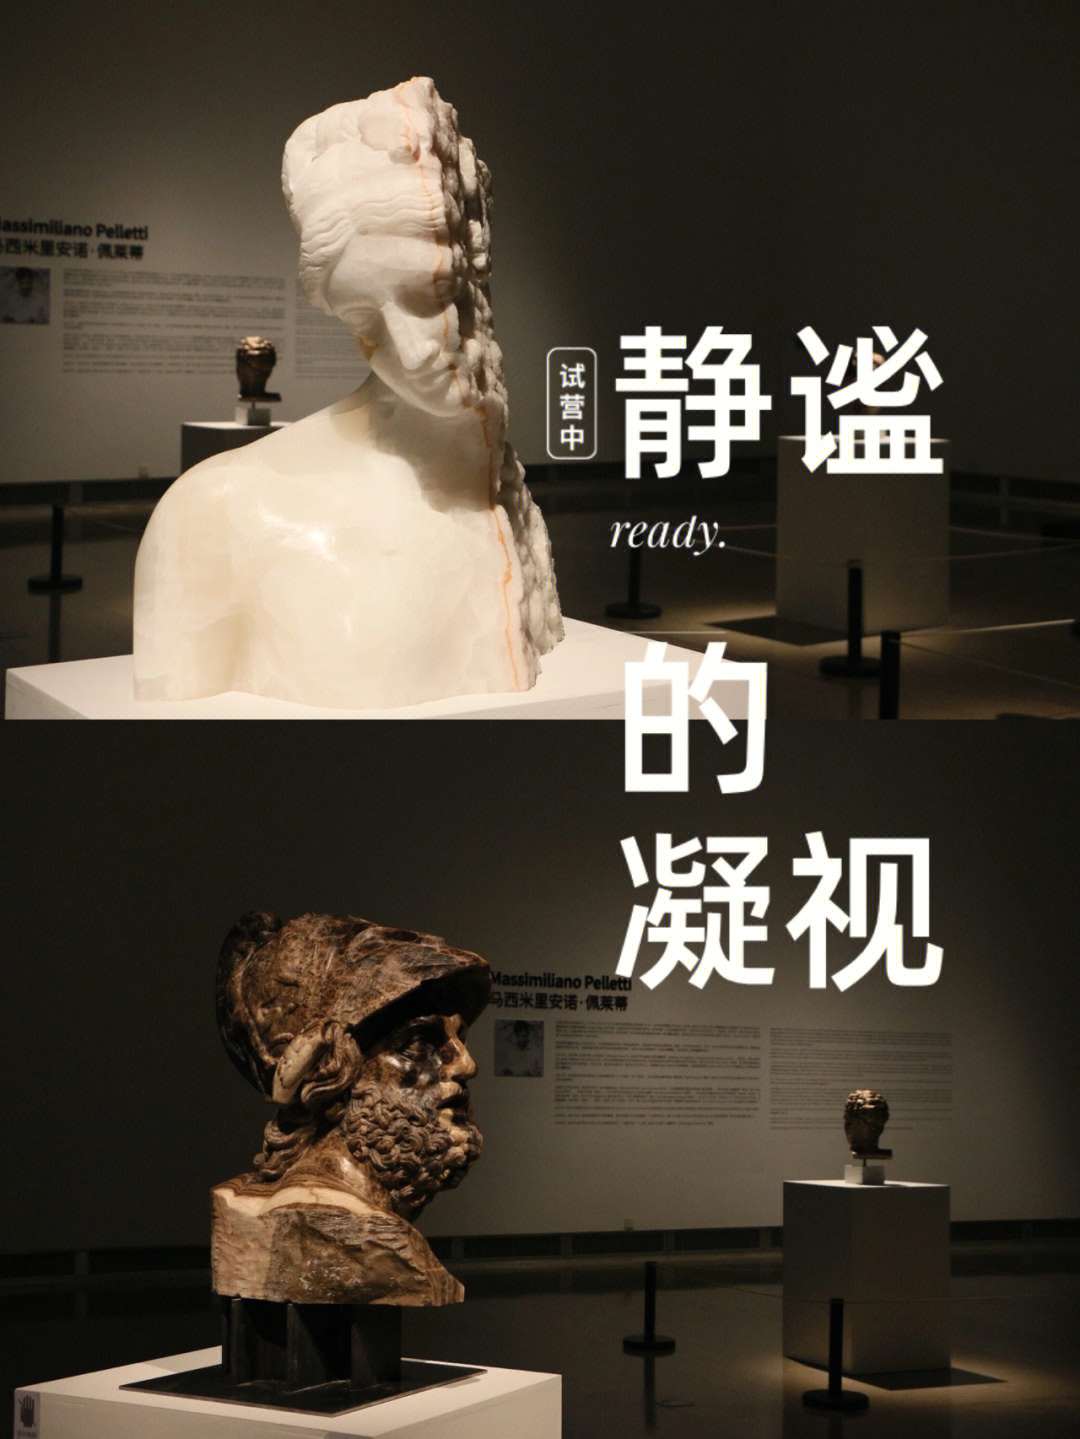 反响的沉默的情感:布鲁诺·瓦尔波特作品展后推出的域外雕塑作品展